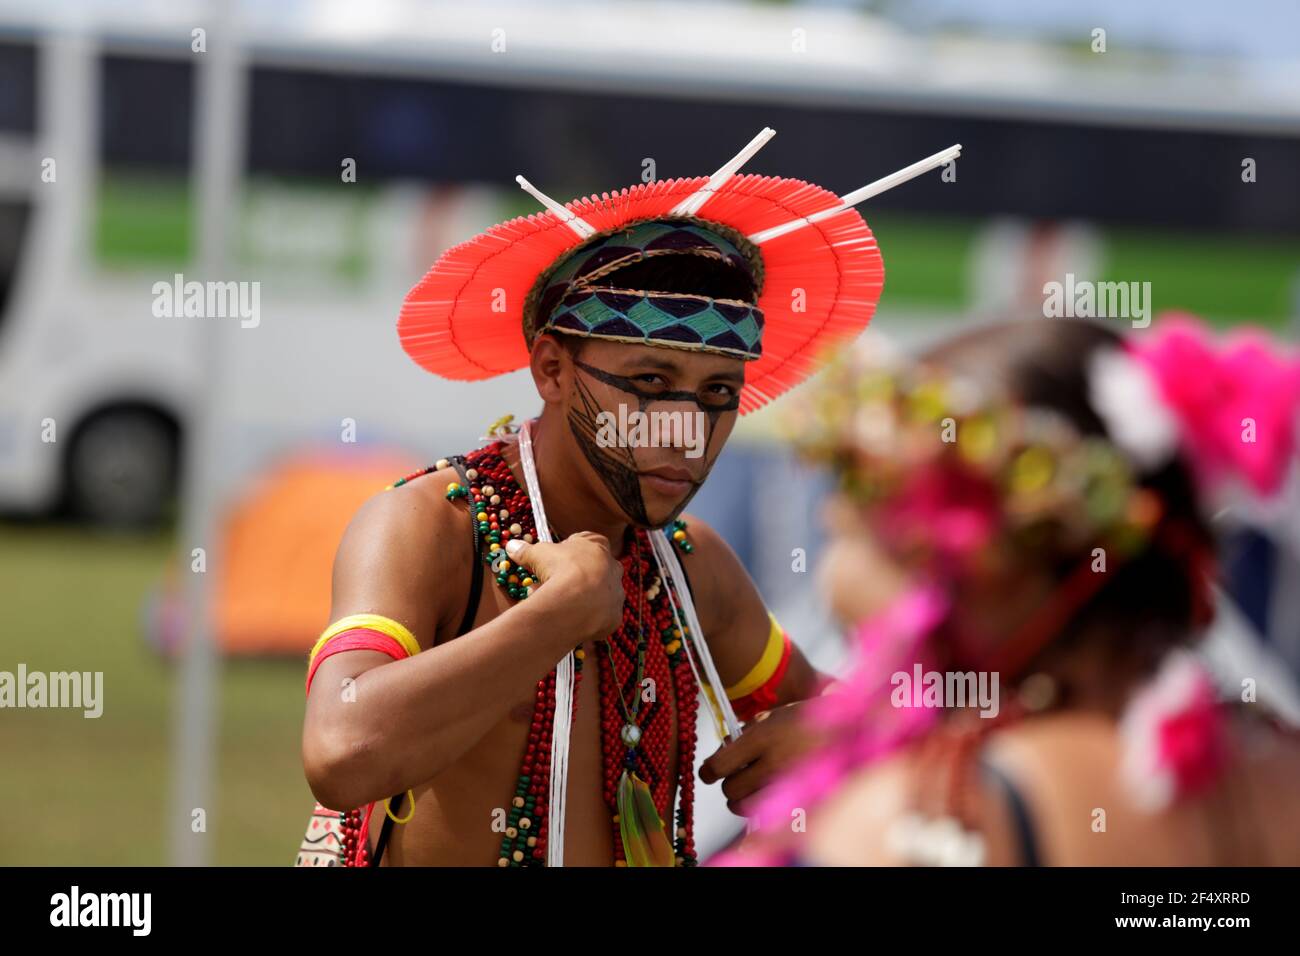 salvador, bahia / brésil - 7 mai 2019: Autochtones de la tribu Bahia sont vus pendant pour débattre de la conjoncture politique et exiger la démarcation des autochtones Banque D'Images